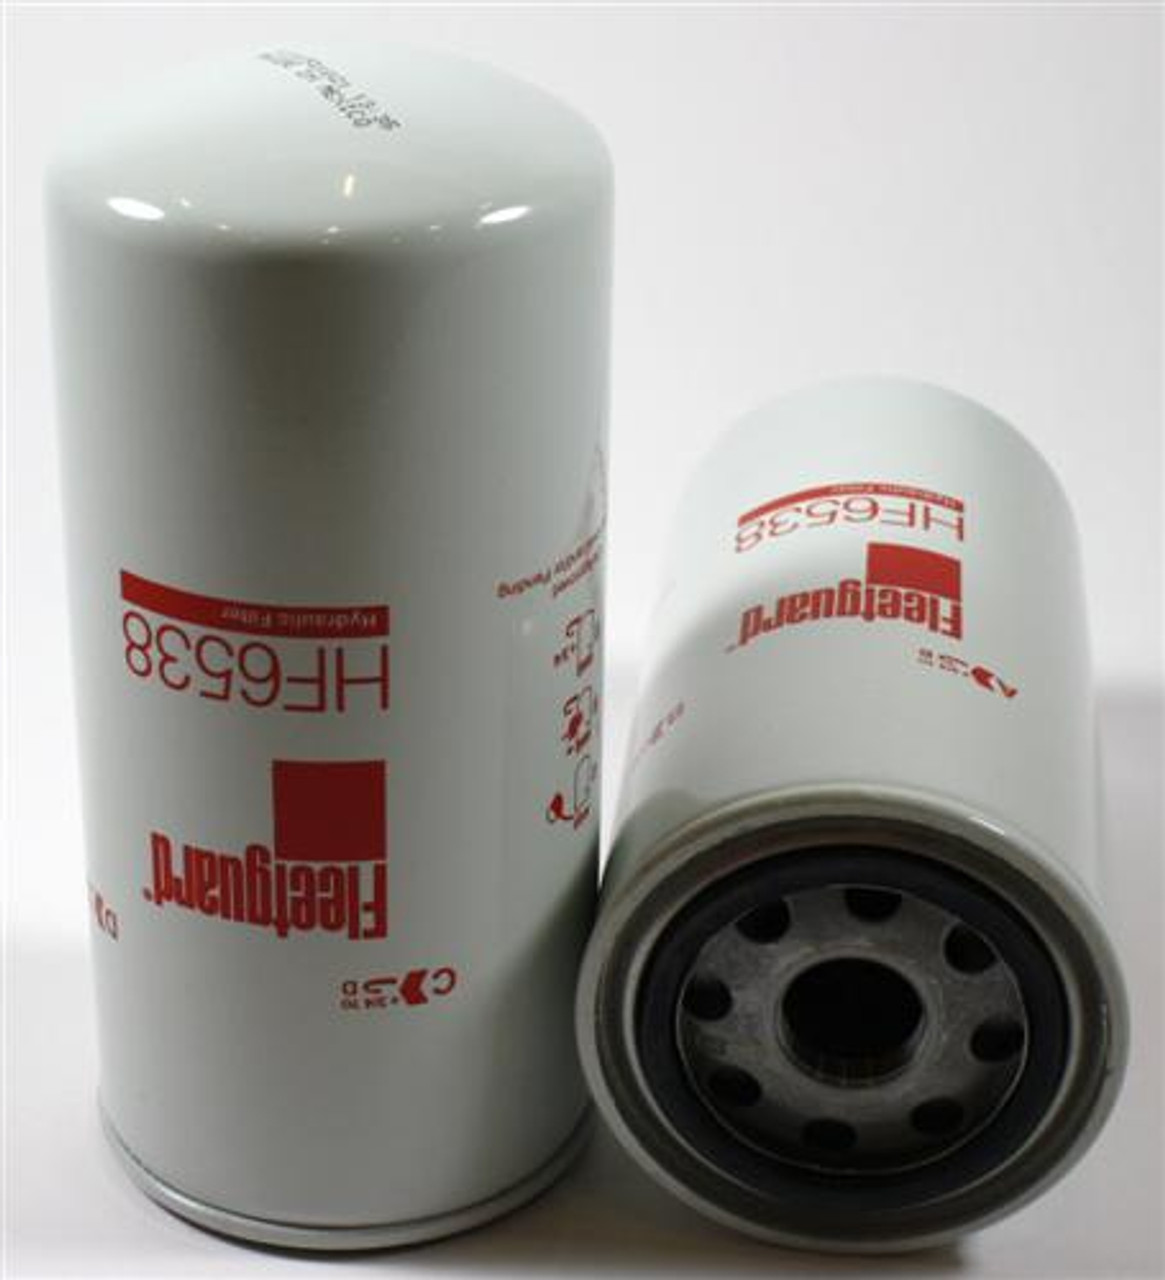 HF6538: Fleetguard Hydraulic Filter